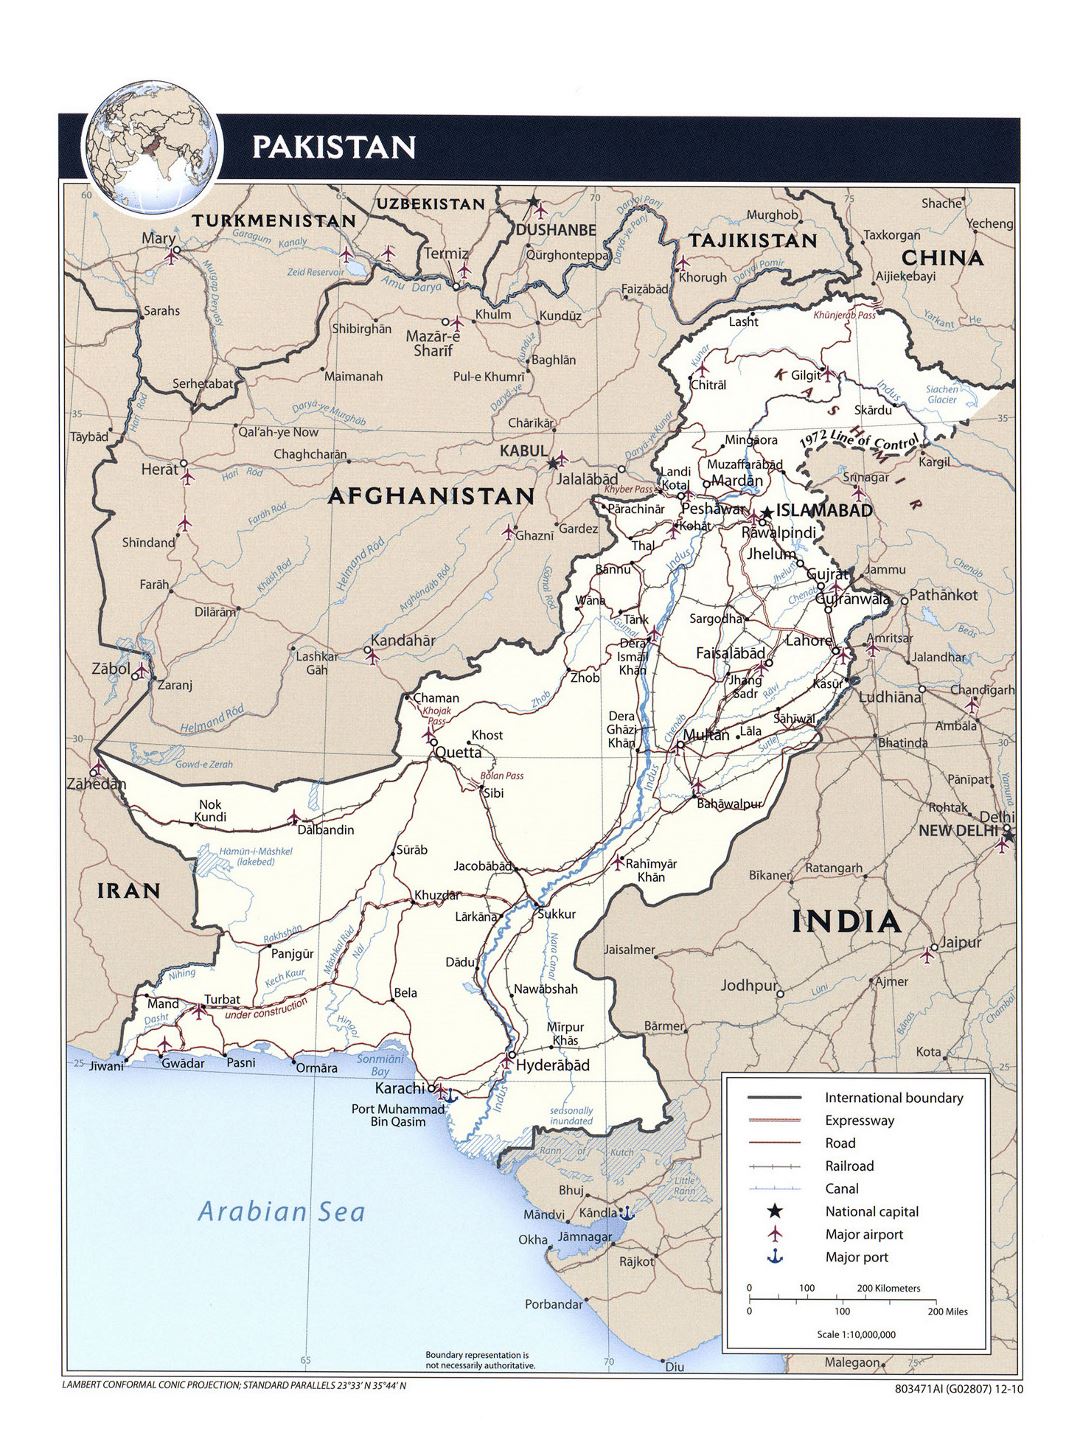 Detallado mapa político de Pakistán con carreteras, ferrocarriles, principales ciudades, aeropuertos, puertos y otras marcas - 2010